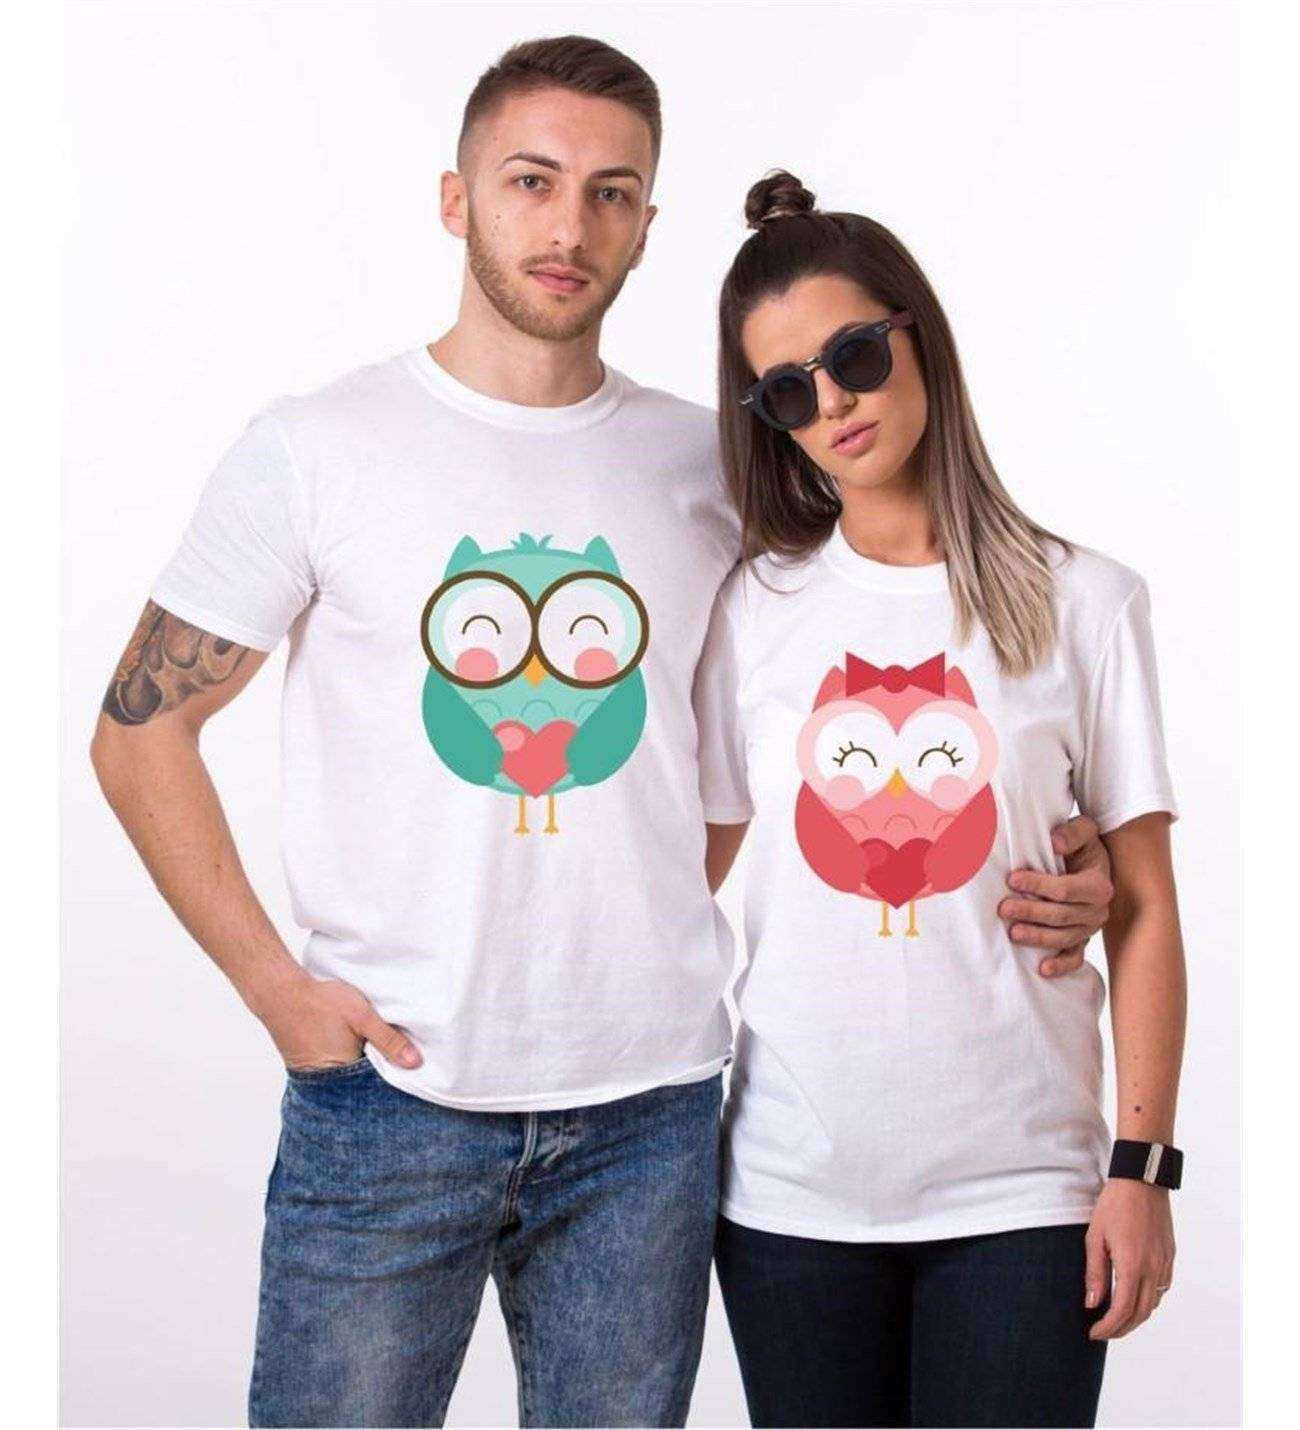 Tshirthane Owl Baykuş  Sevgili Kombinleri Tshirt Çift Kombini